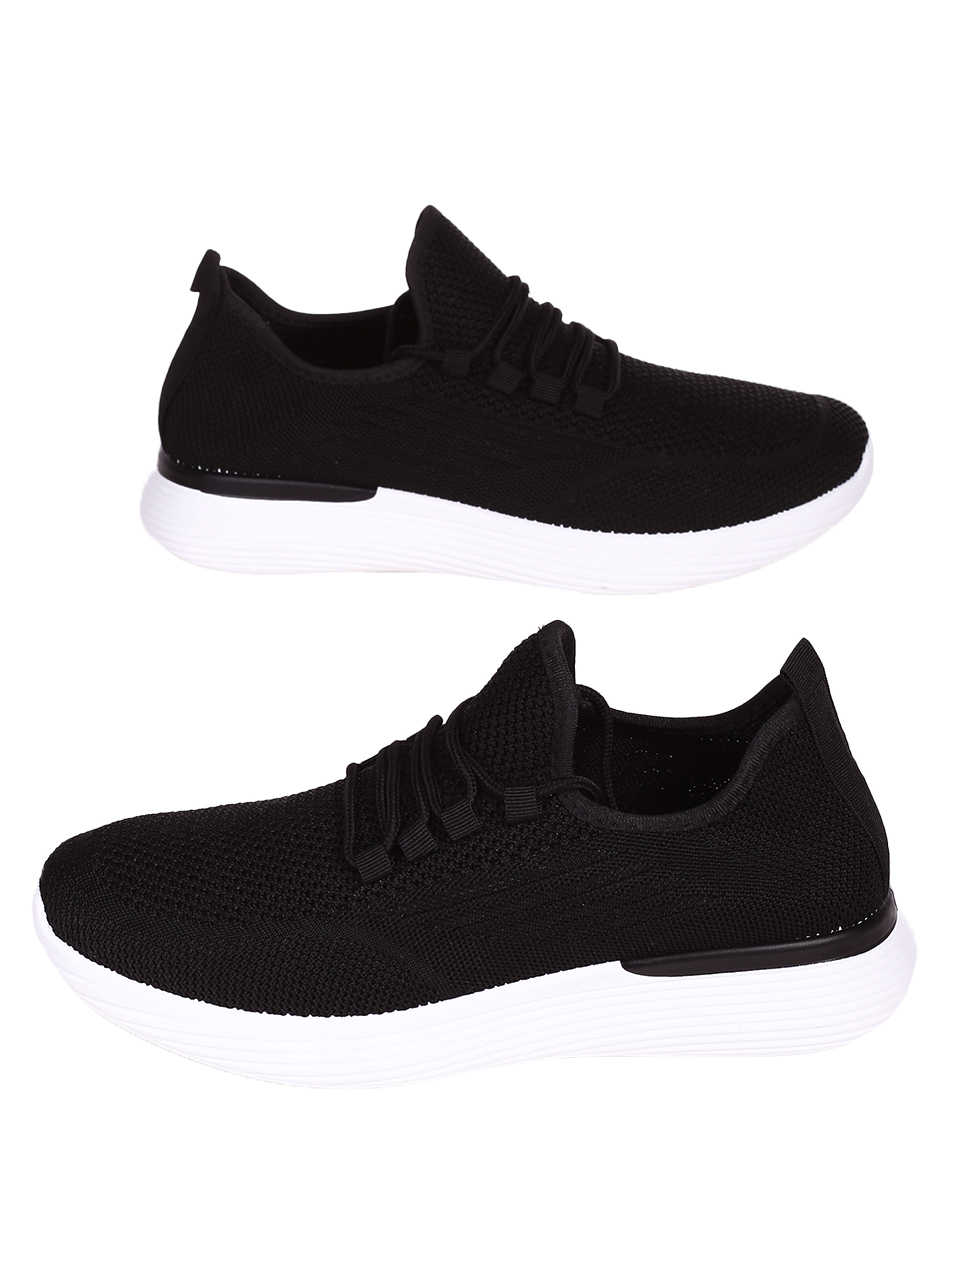 Ежедневни мъжки комфортни обувки в черно 7U-23217 black